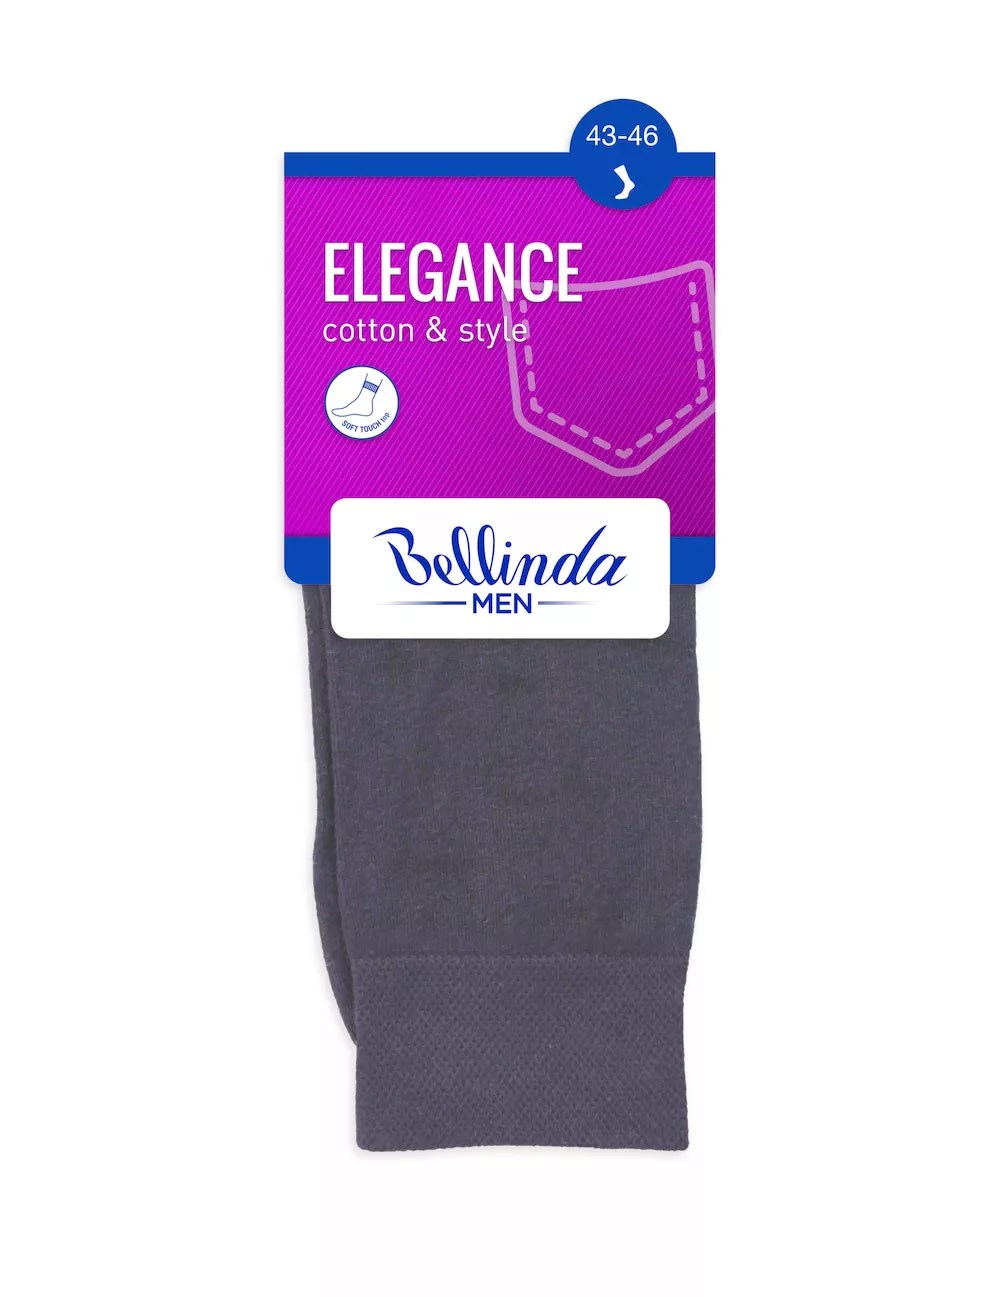 Ponožky pánské Elegance 6511